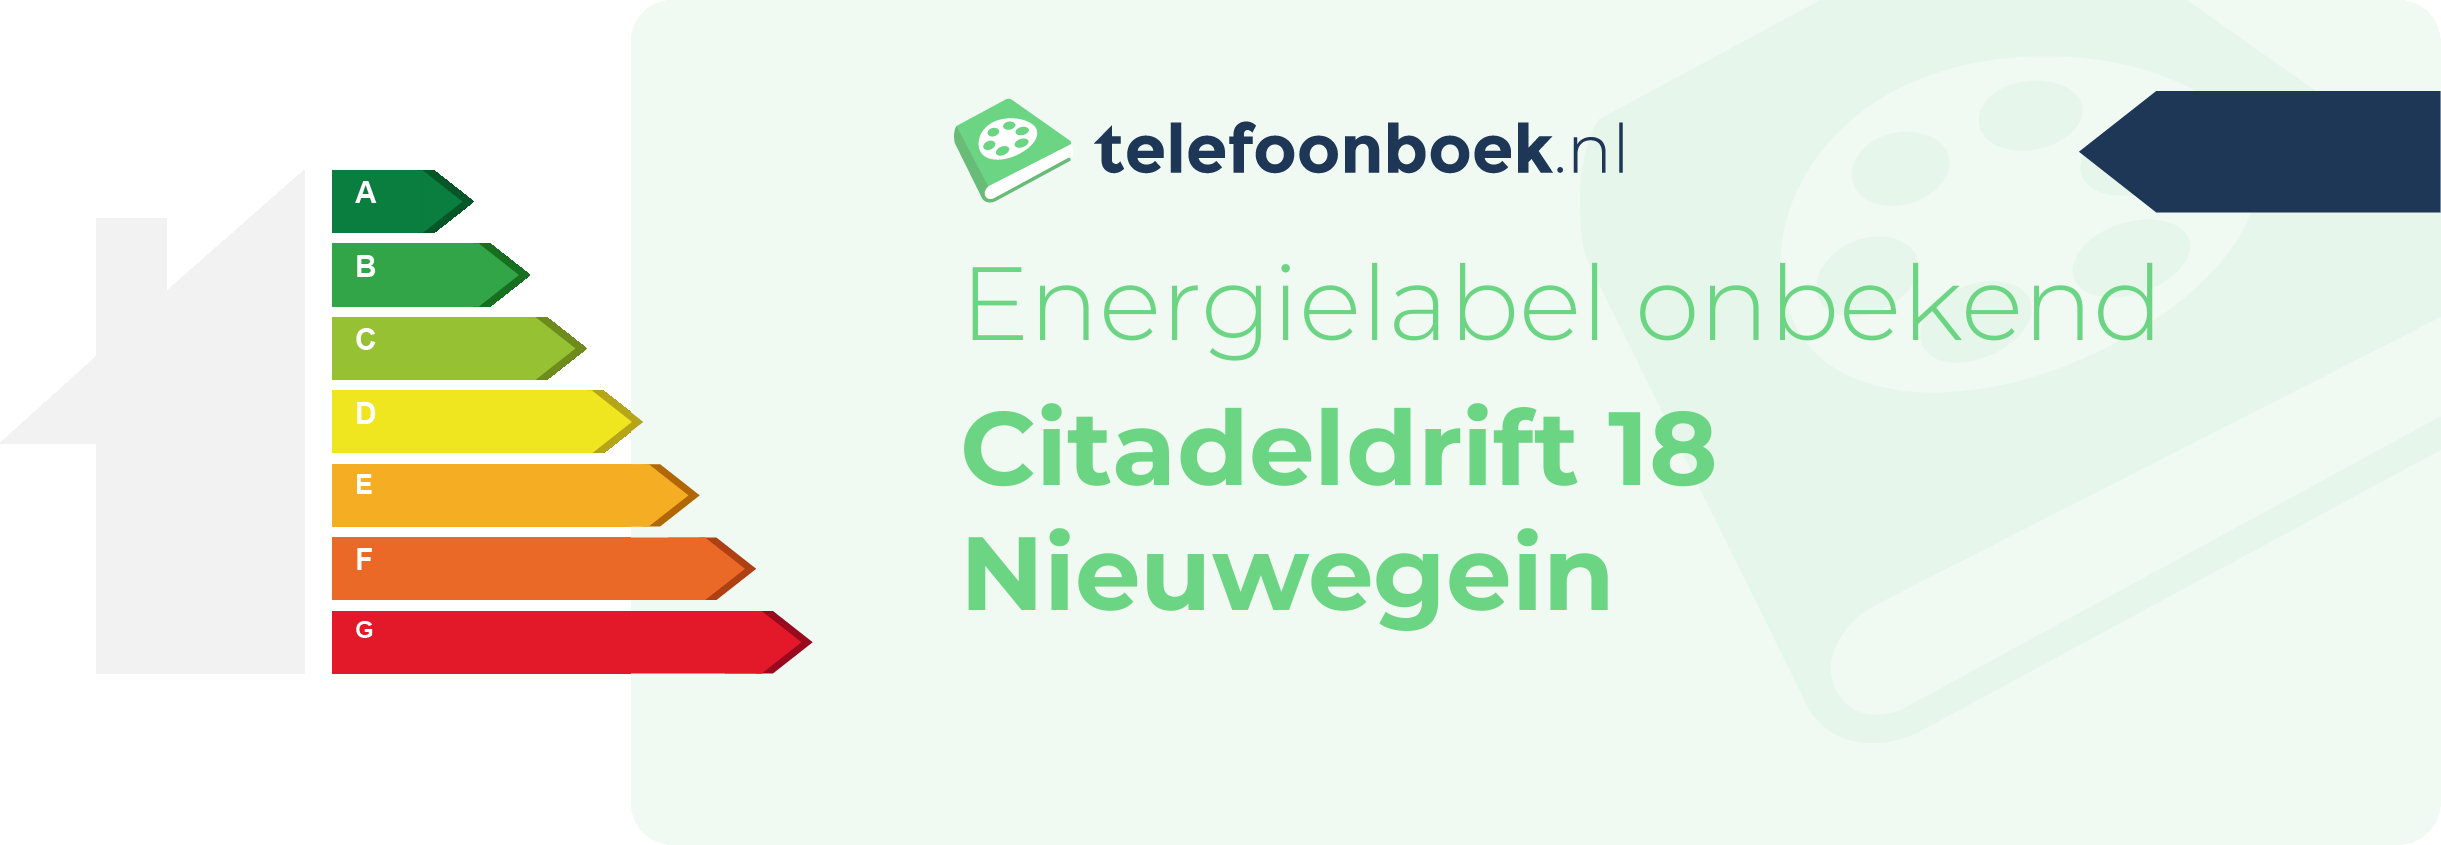 Energielabel Citadeldrift 18 Nieuwegein